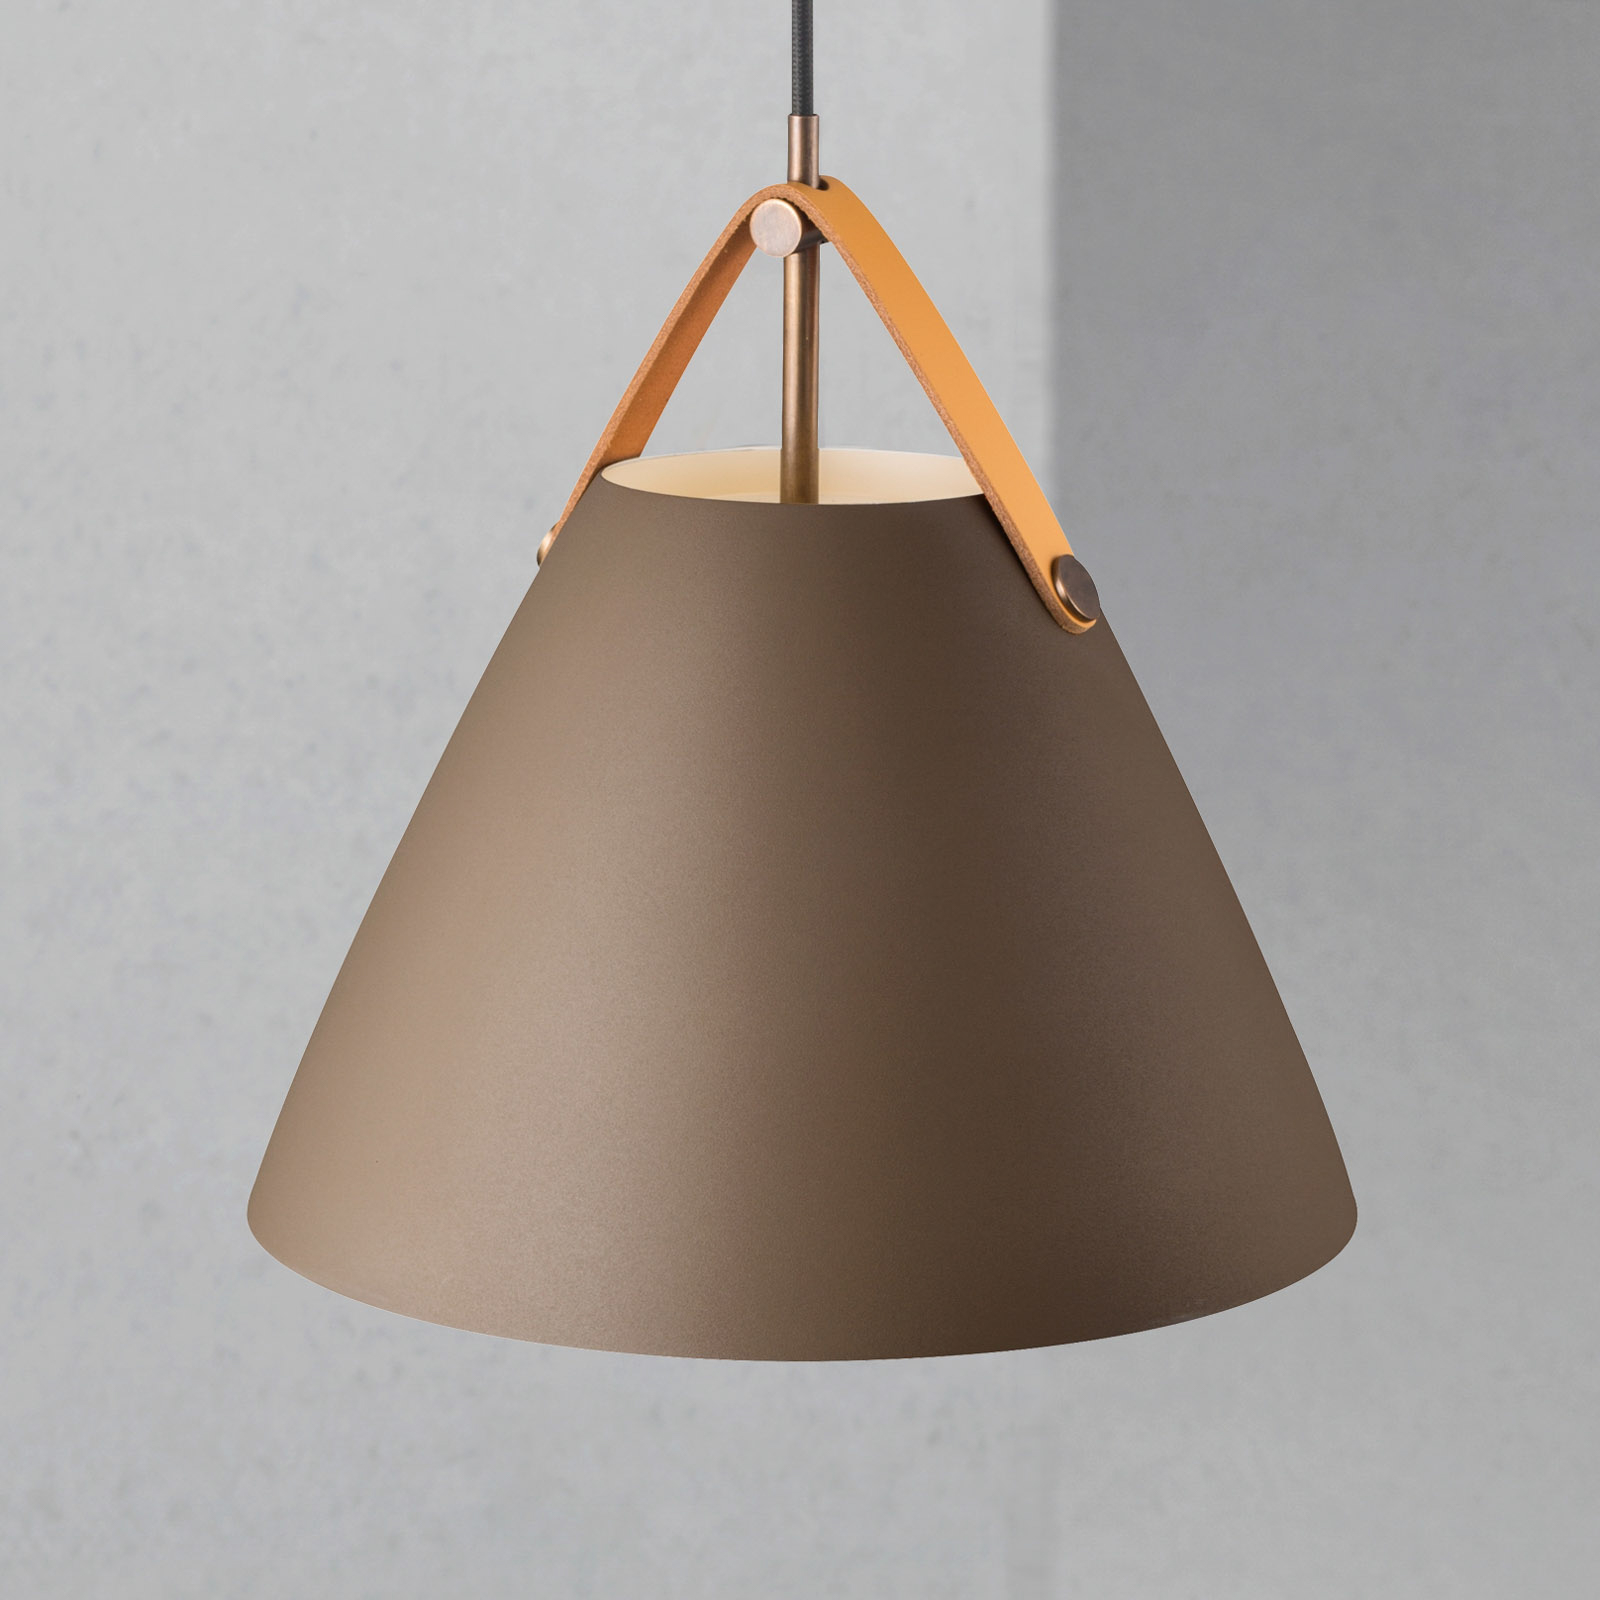 Hanglamp Strap met metalen kap beige, 27 cm